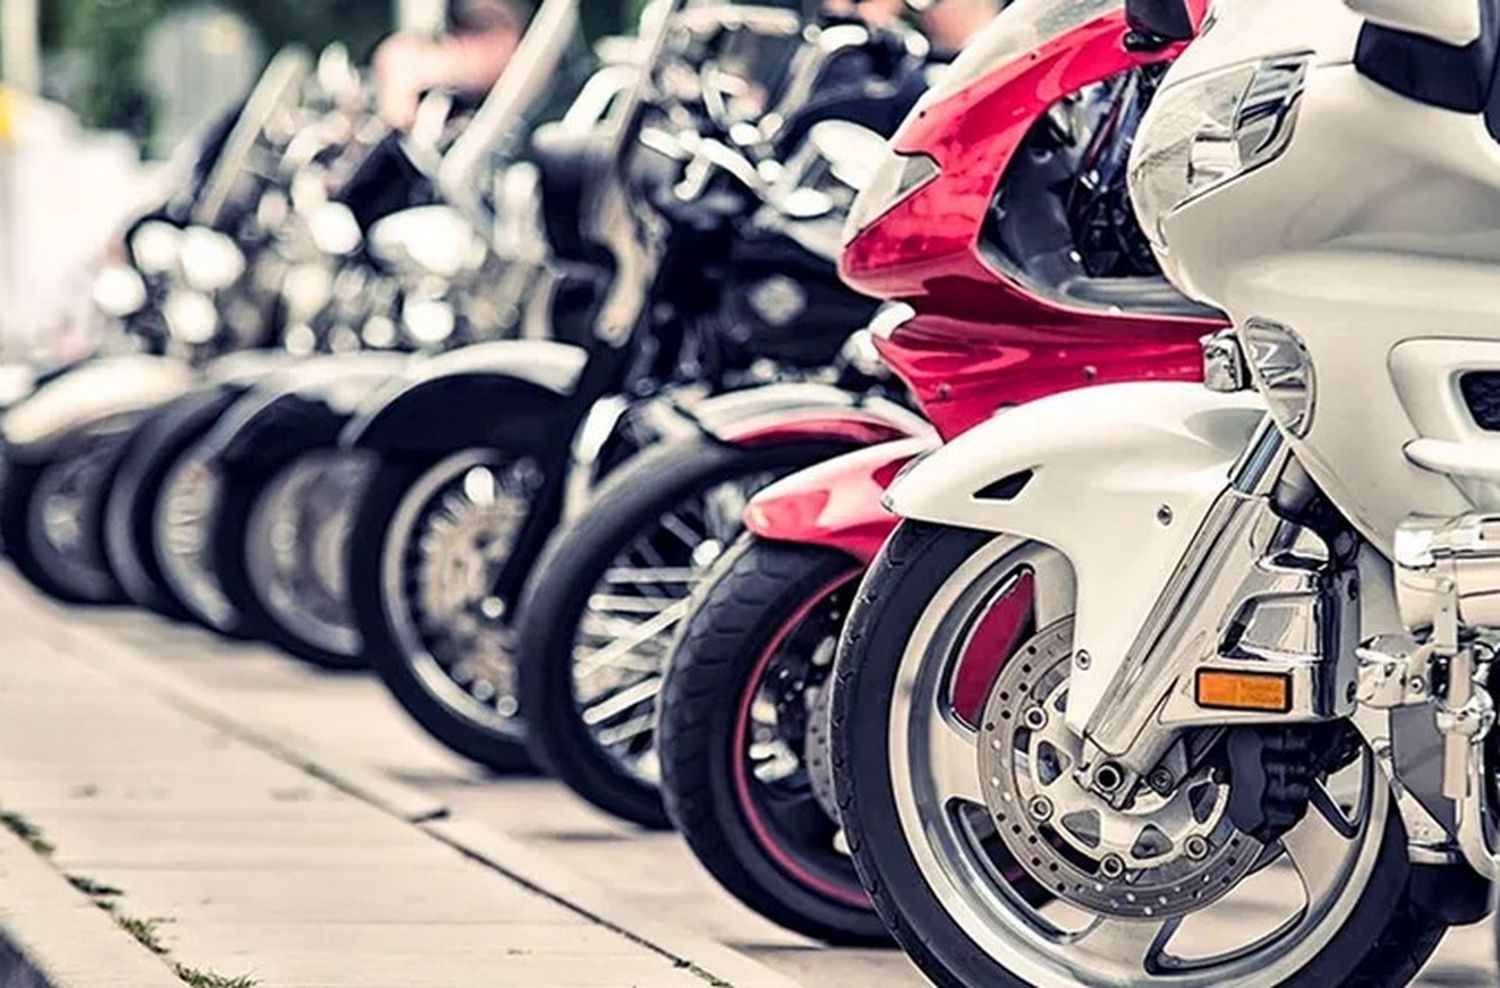 Las motos que se vendan en el país no podrán circular sin el seguro obligatorio